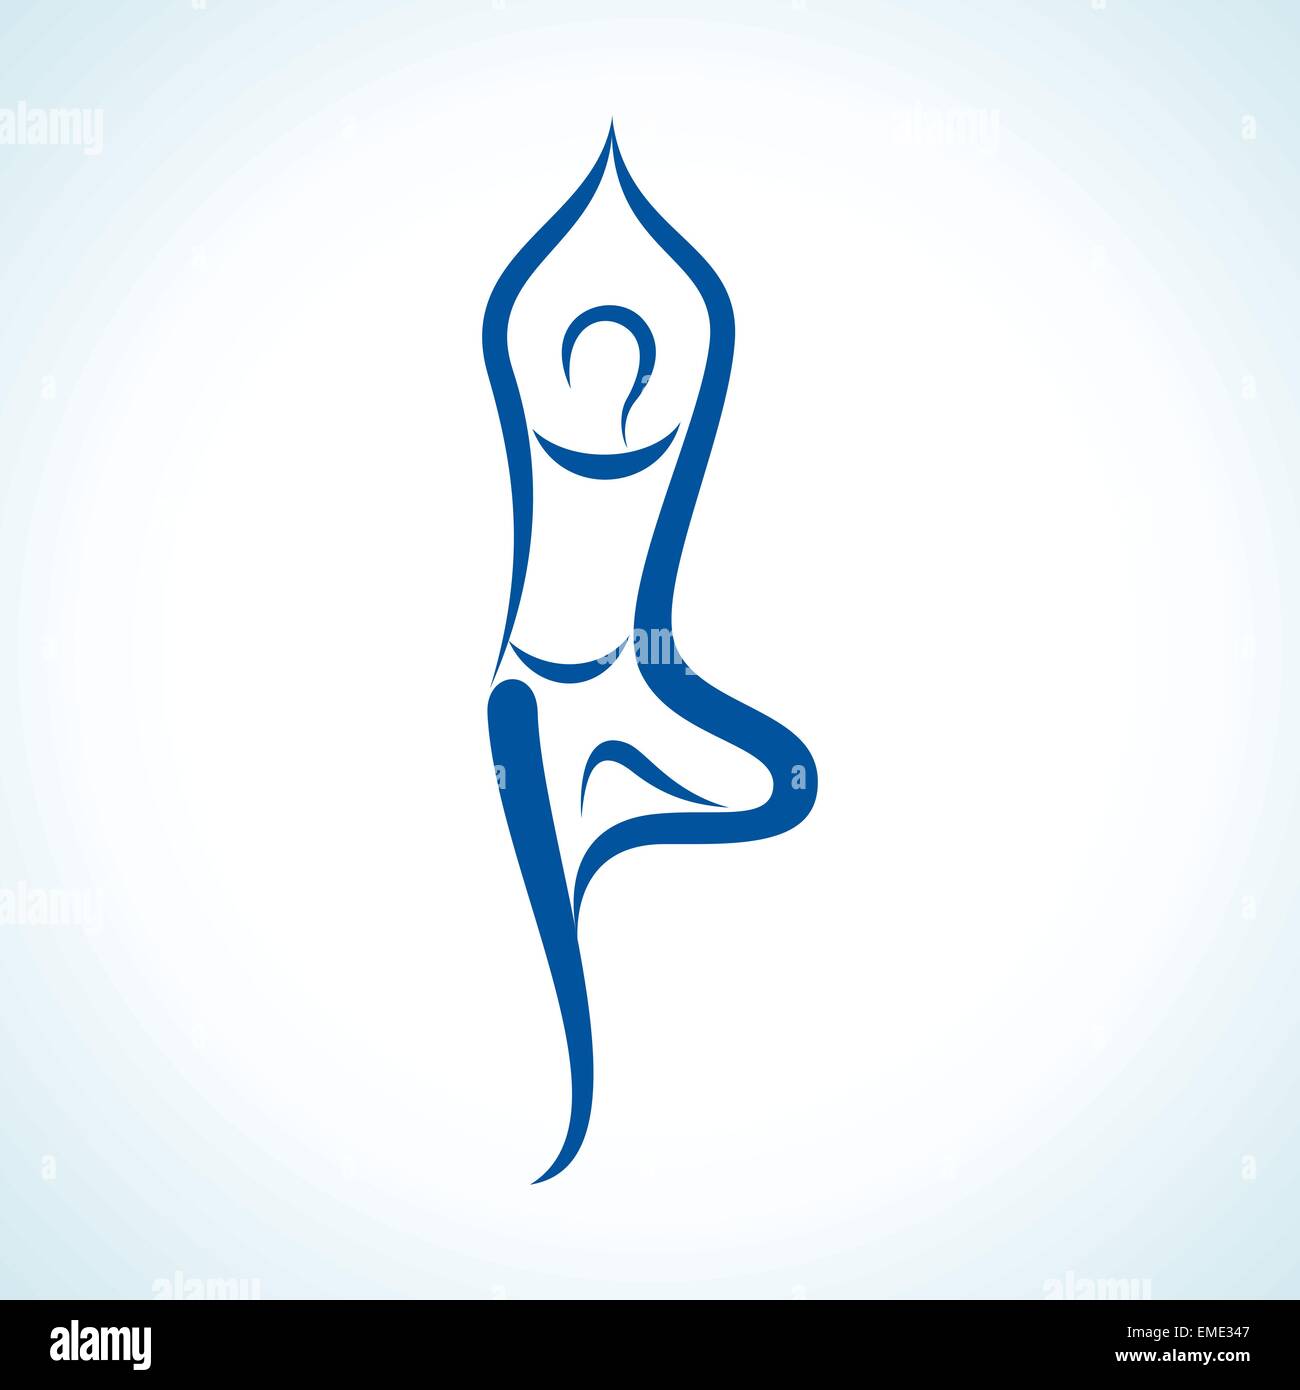 Illustration Of Stylized Yoga Pose Stock Vector Image Art Alamy